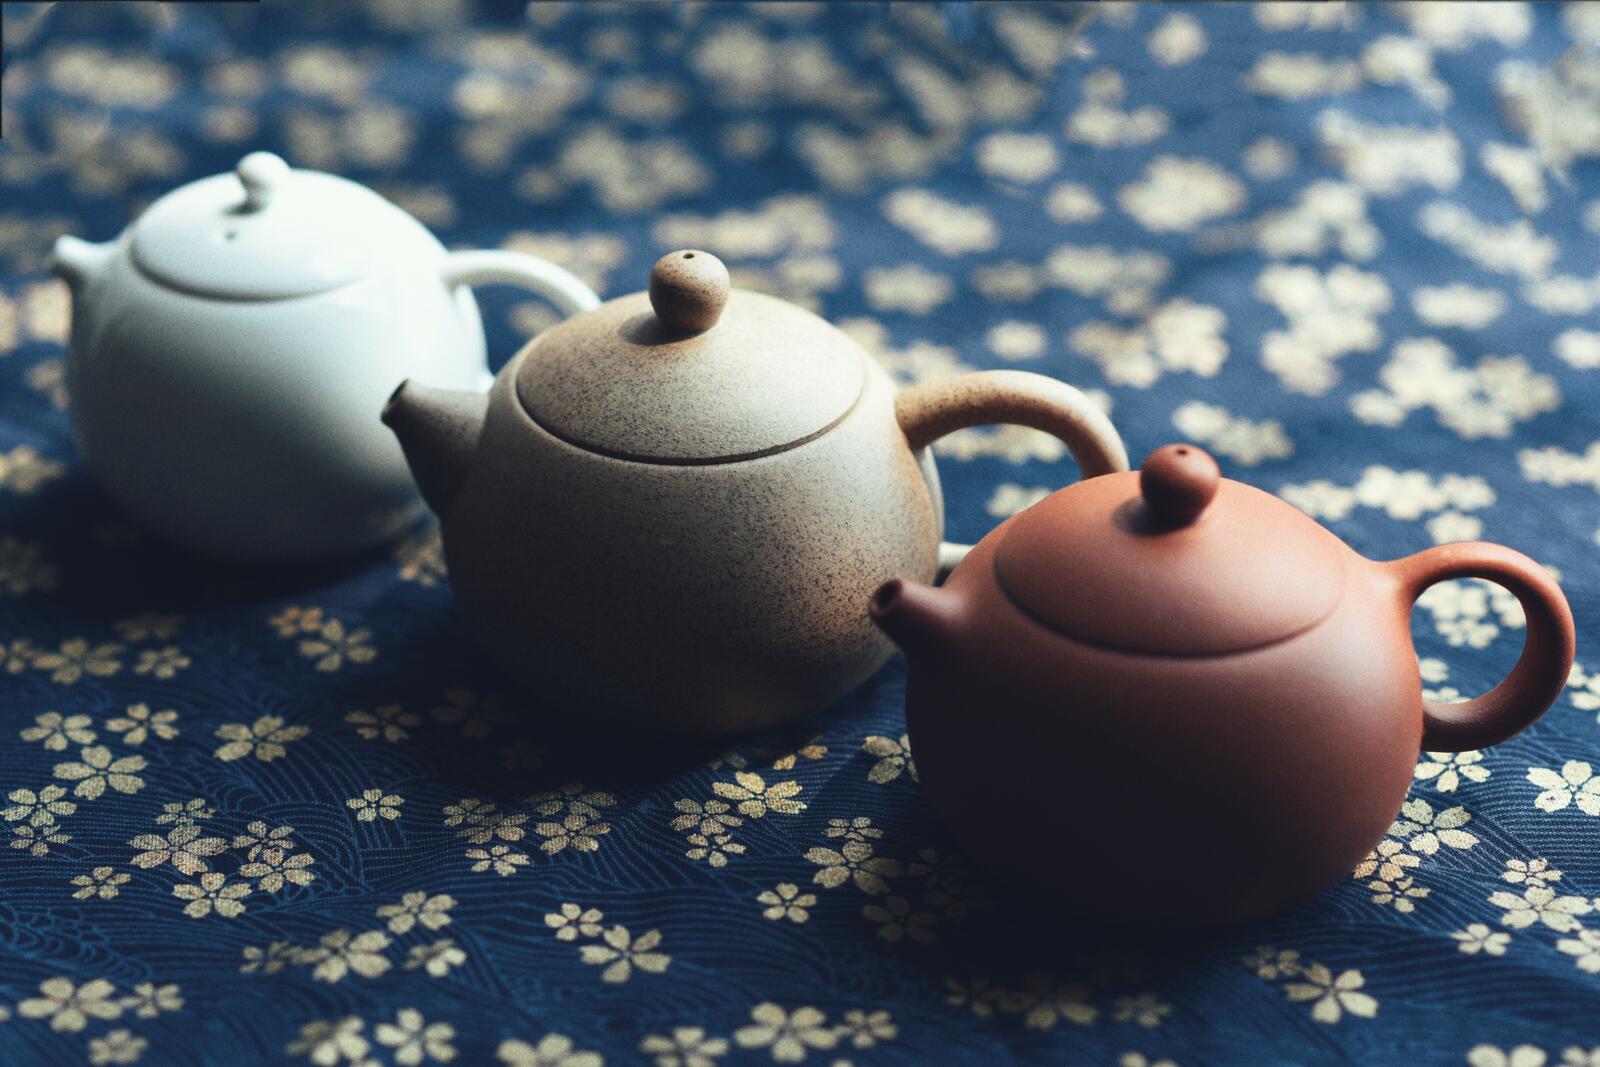 Бесплатное фото Три керамических чайника стоит на синей ткани с цветочками